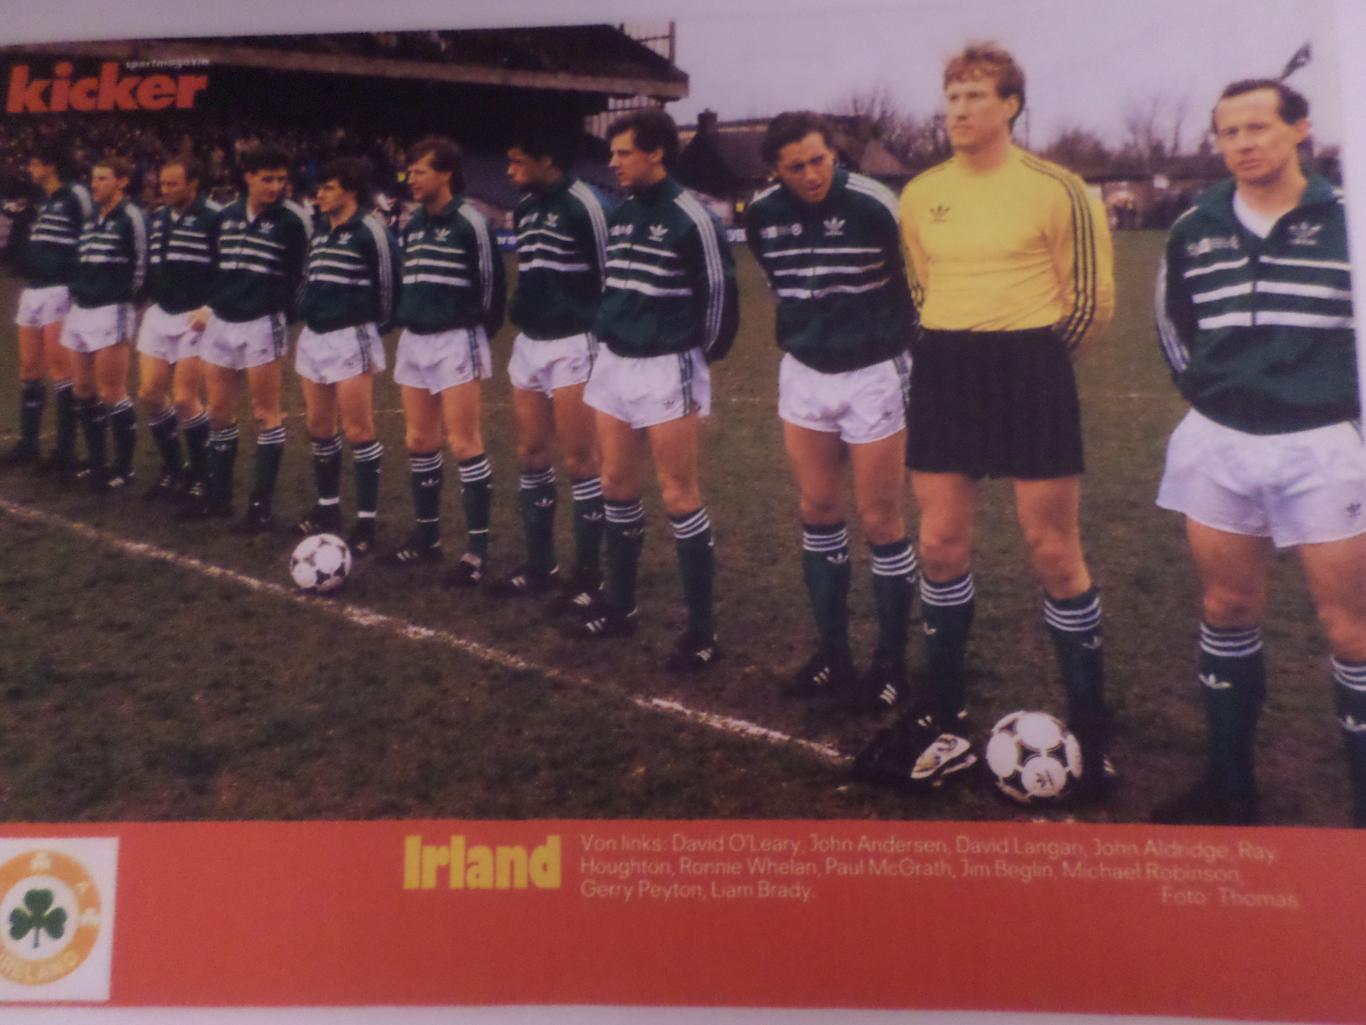 постер из журнала Киккер Германия ( цветная ксерокопия) сборная Ирландия